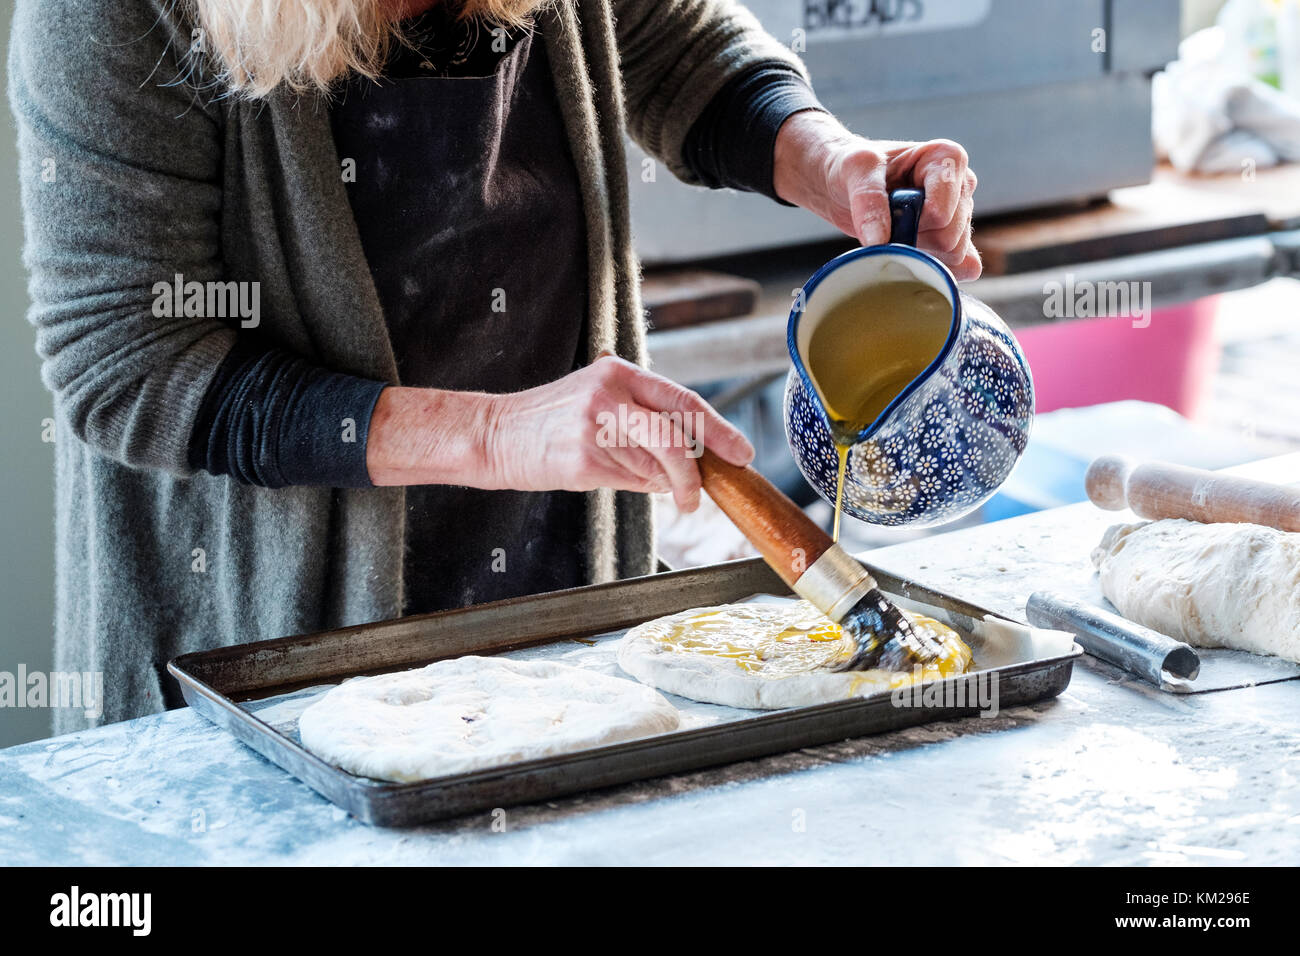 Une femelle baker prépare focaccia pain plat italien à un décrochage de plein air il est jeter de l'huile sur le dessus de la pâte avant il est placé dans un four à cuire Banque D'Images